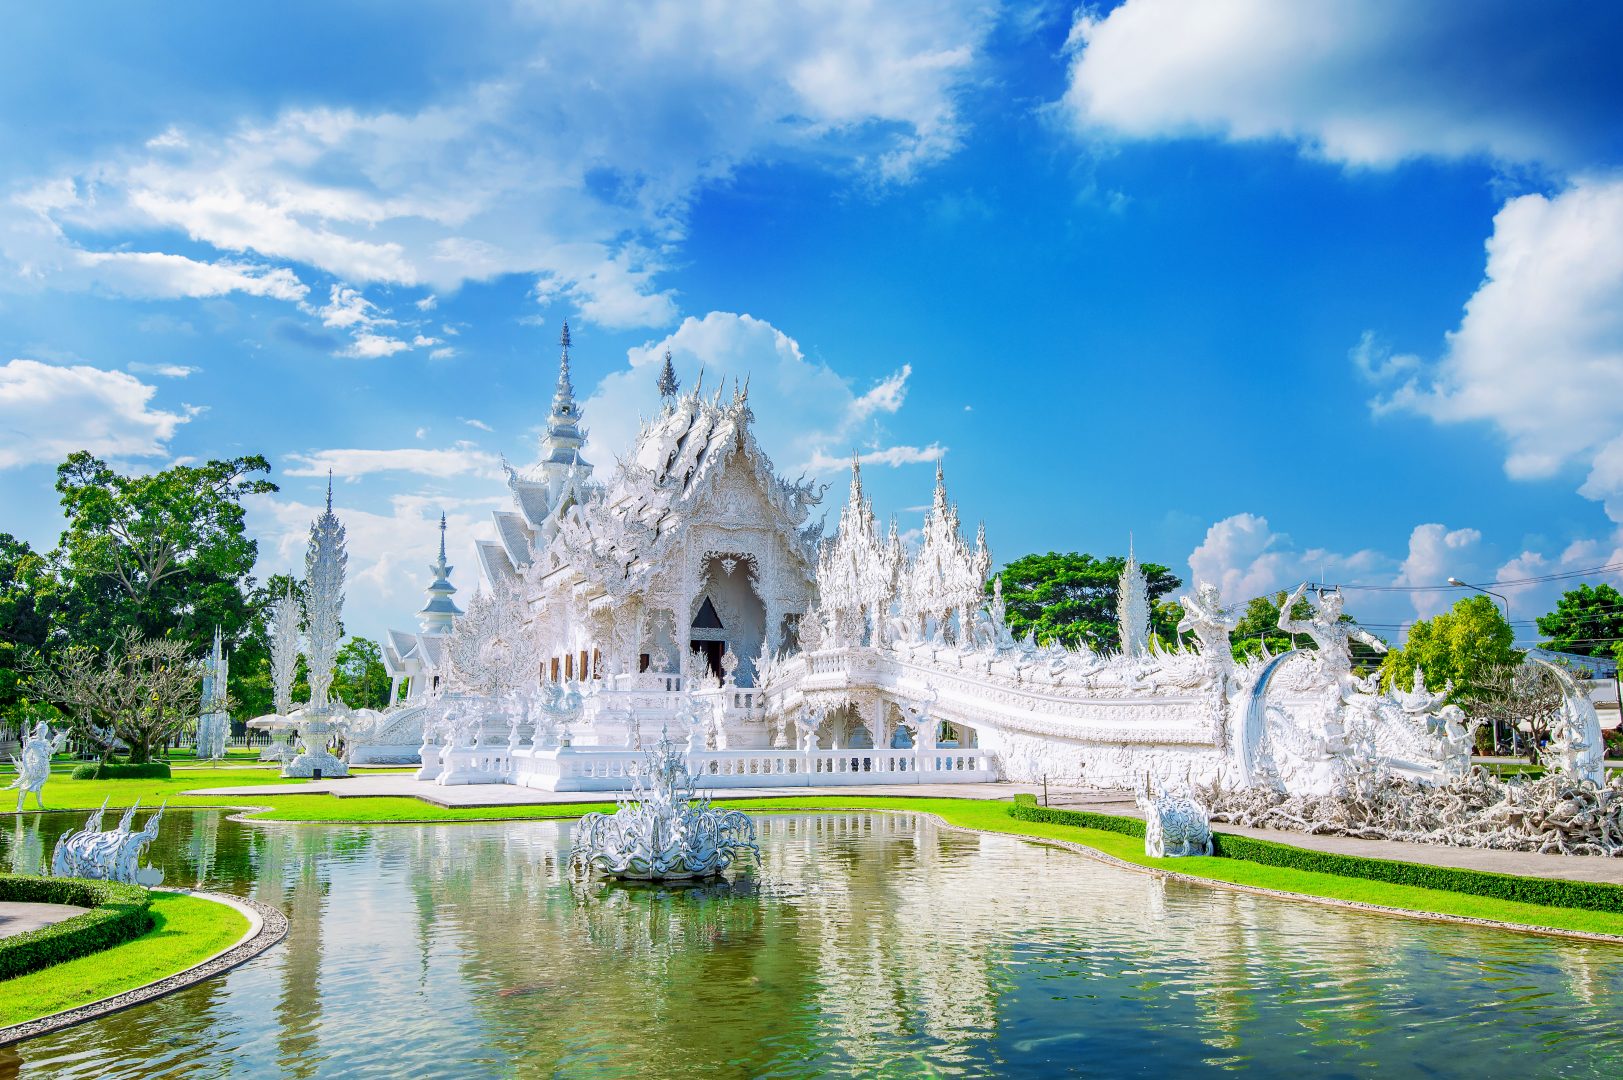 wat-rong-khun-temple-white-temple-chiang-rai-thailand-1623x1080.jpg